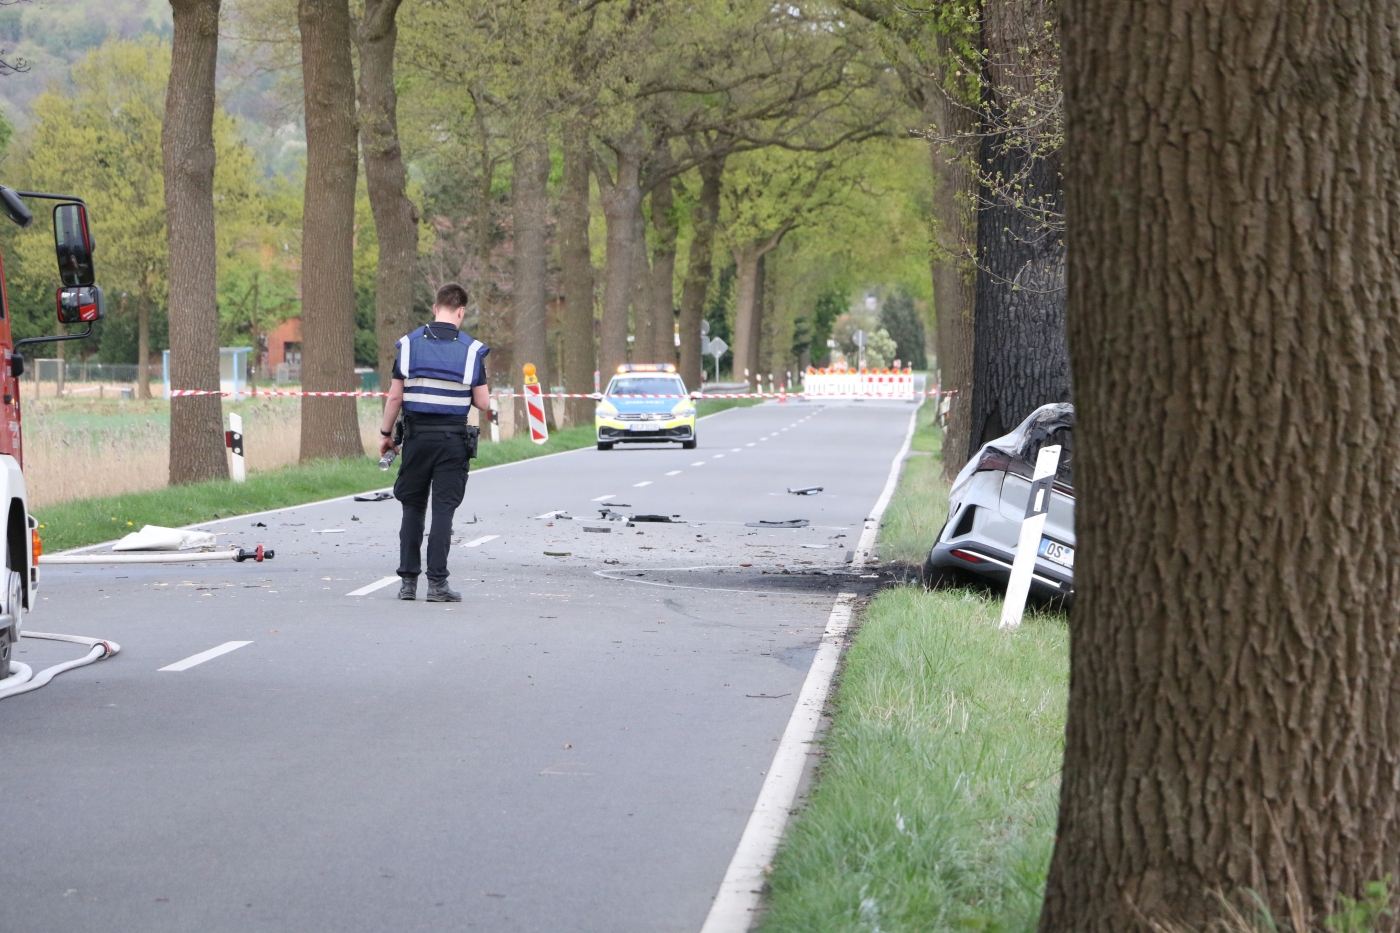 Autounfall in Bissendorf: Zwei Menschen sterben, ein Kind wird lebensgefährlich verletzt